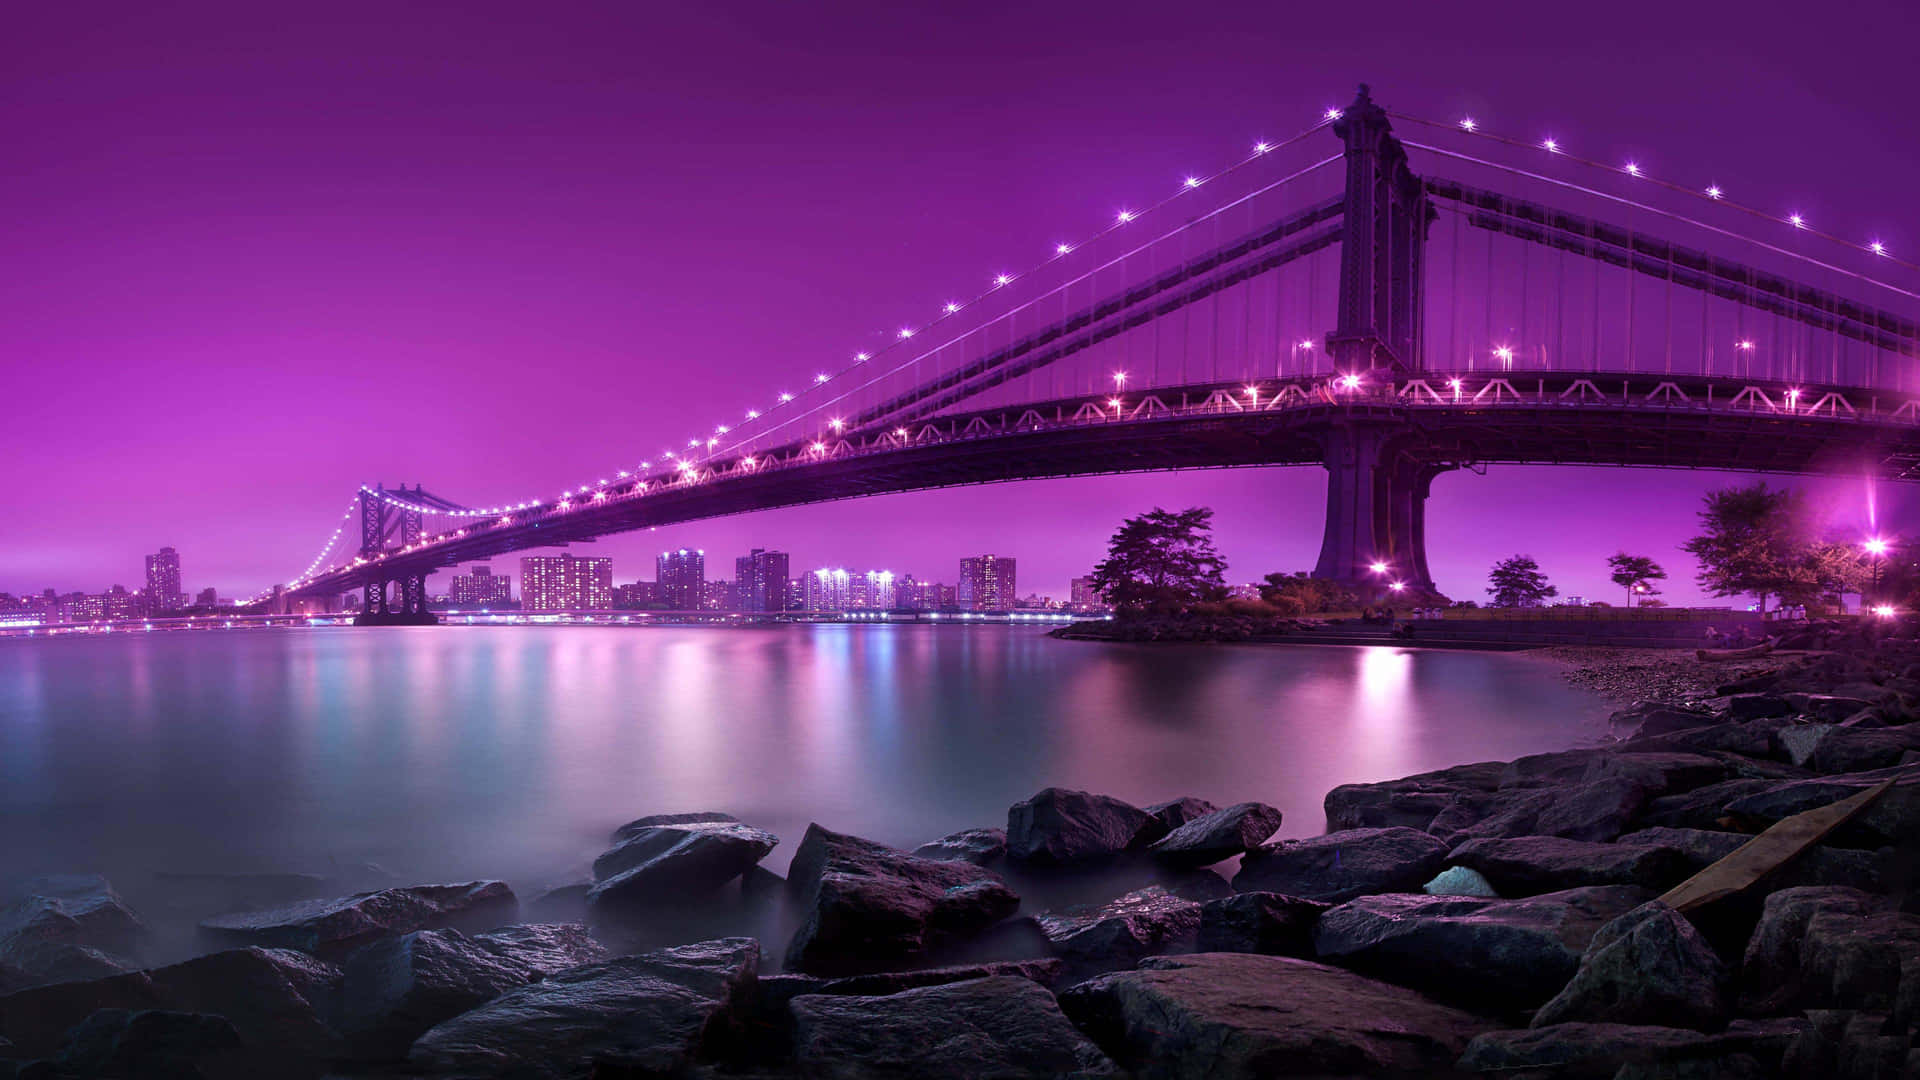 Den natlige skyeline af New York City lyser fra den hektiske og travle livsstil i byen. Wallpaper